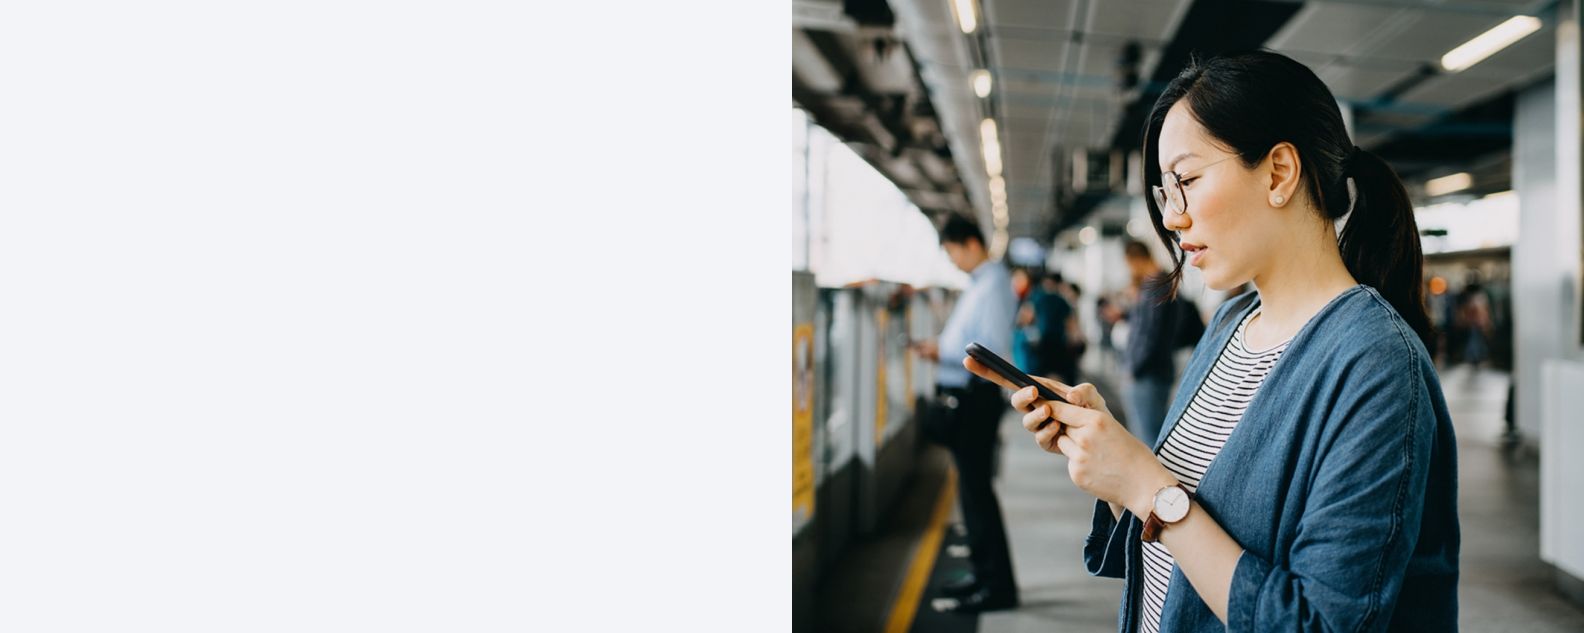 Jeune femme utilisant un téléphone portable sur le quai d’une station de métro